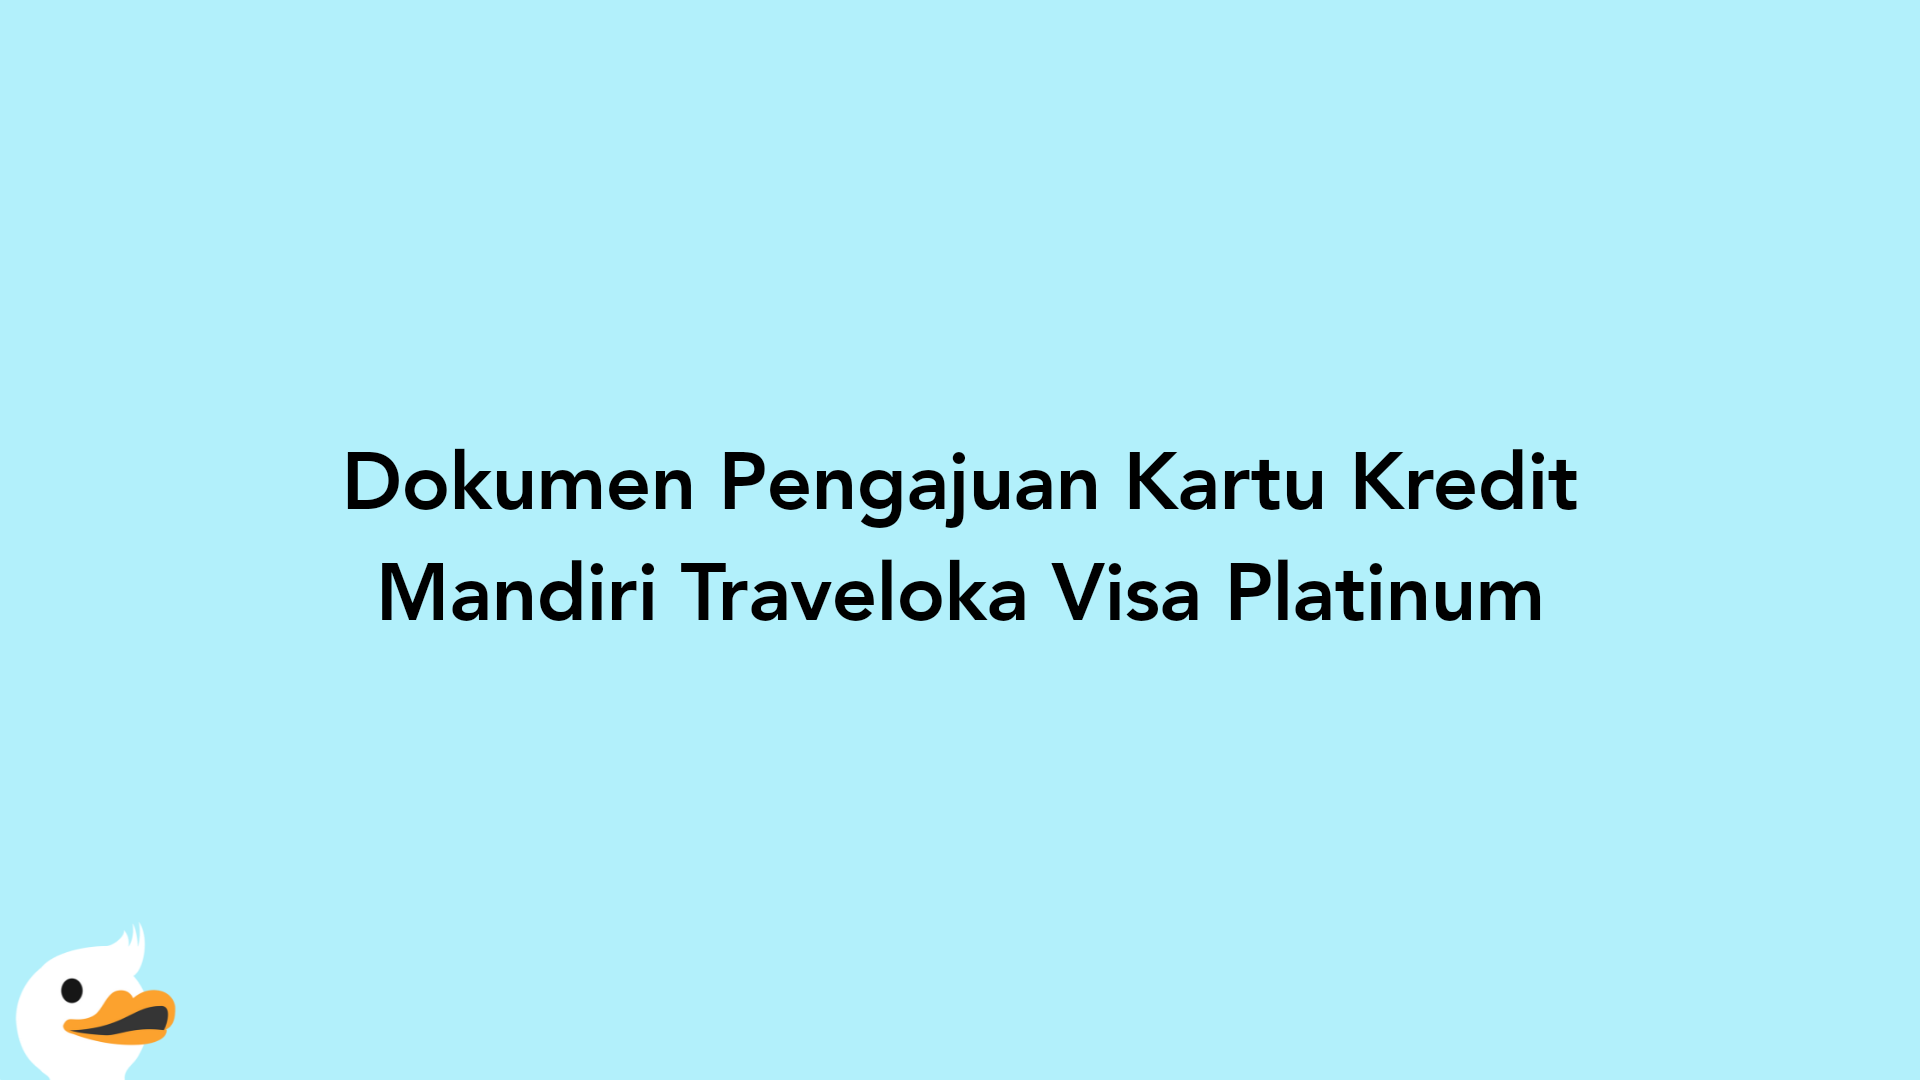 Dokumen Pengajuan Kartu Kredit Mandiri Traveloka Visa Platinum